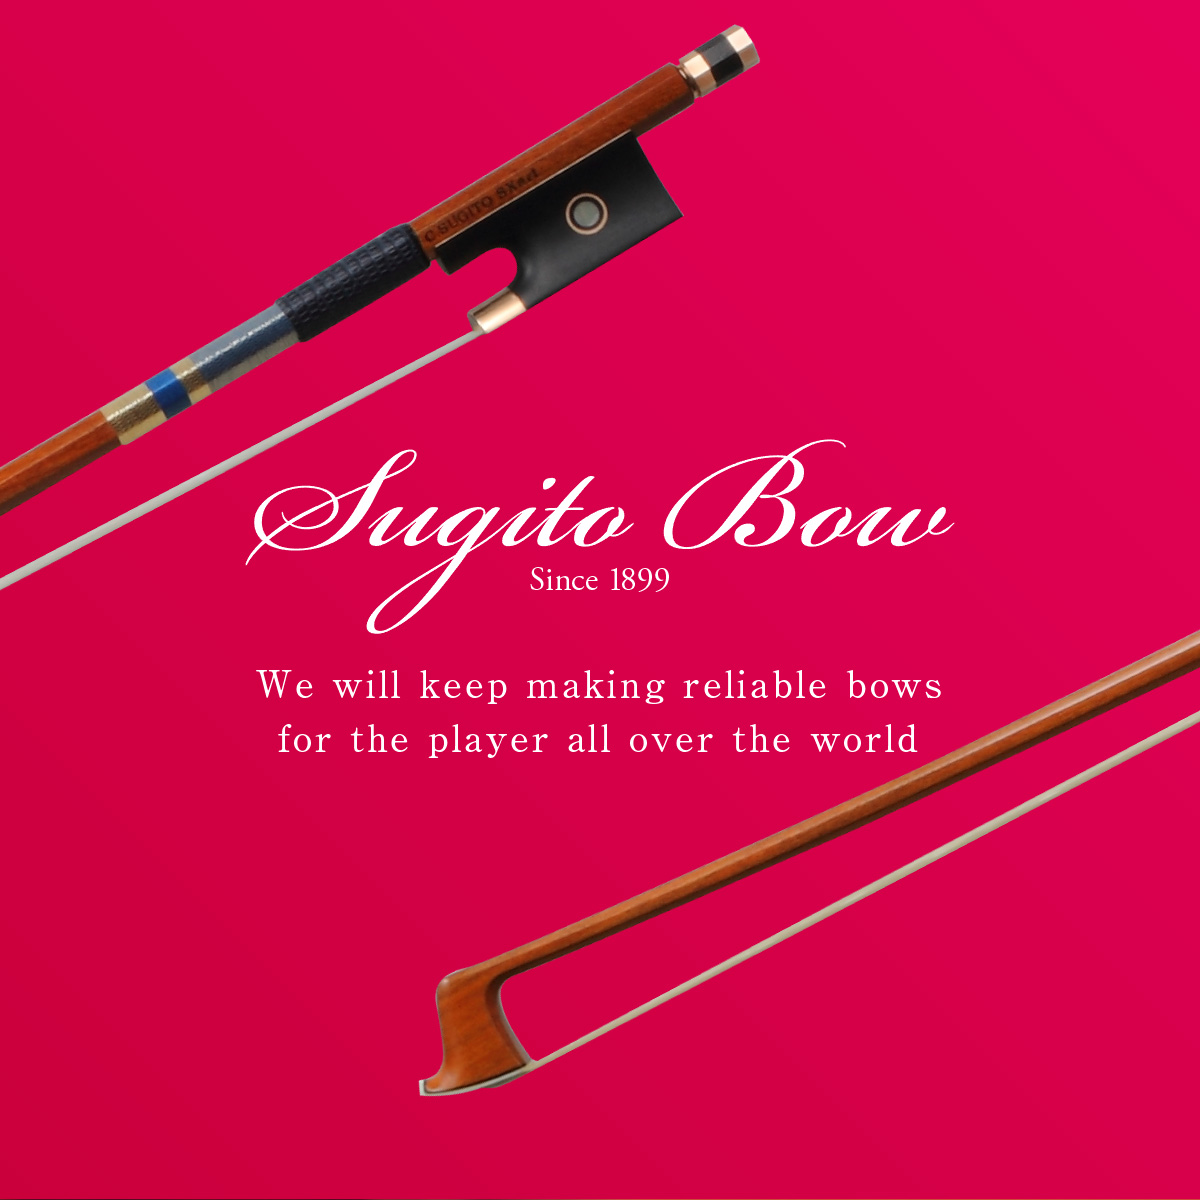 Sugito Bow Since 1899 世界中の方たちの右腕として信頼できる楽弓を作り続けていきます。